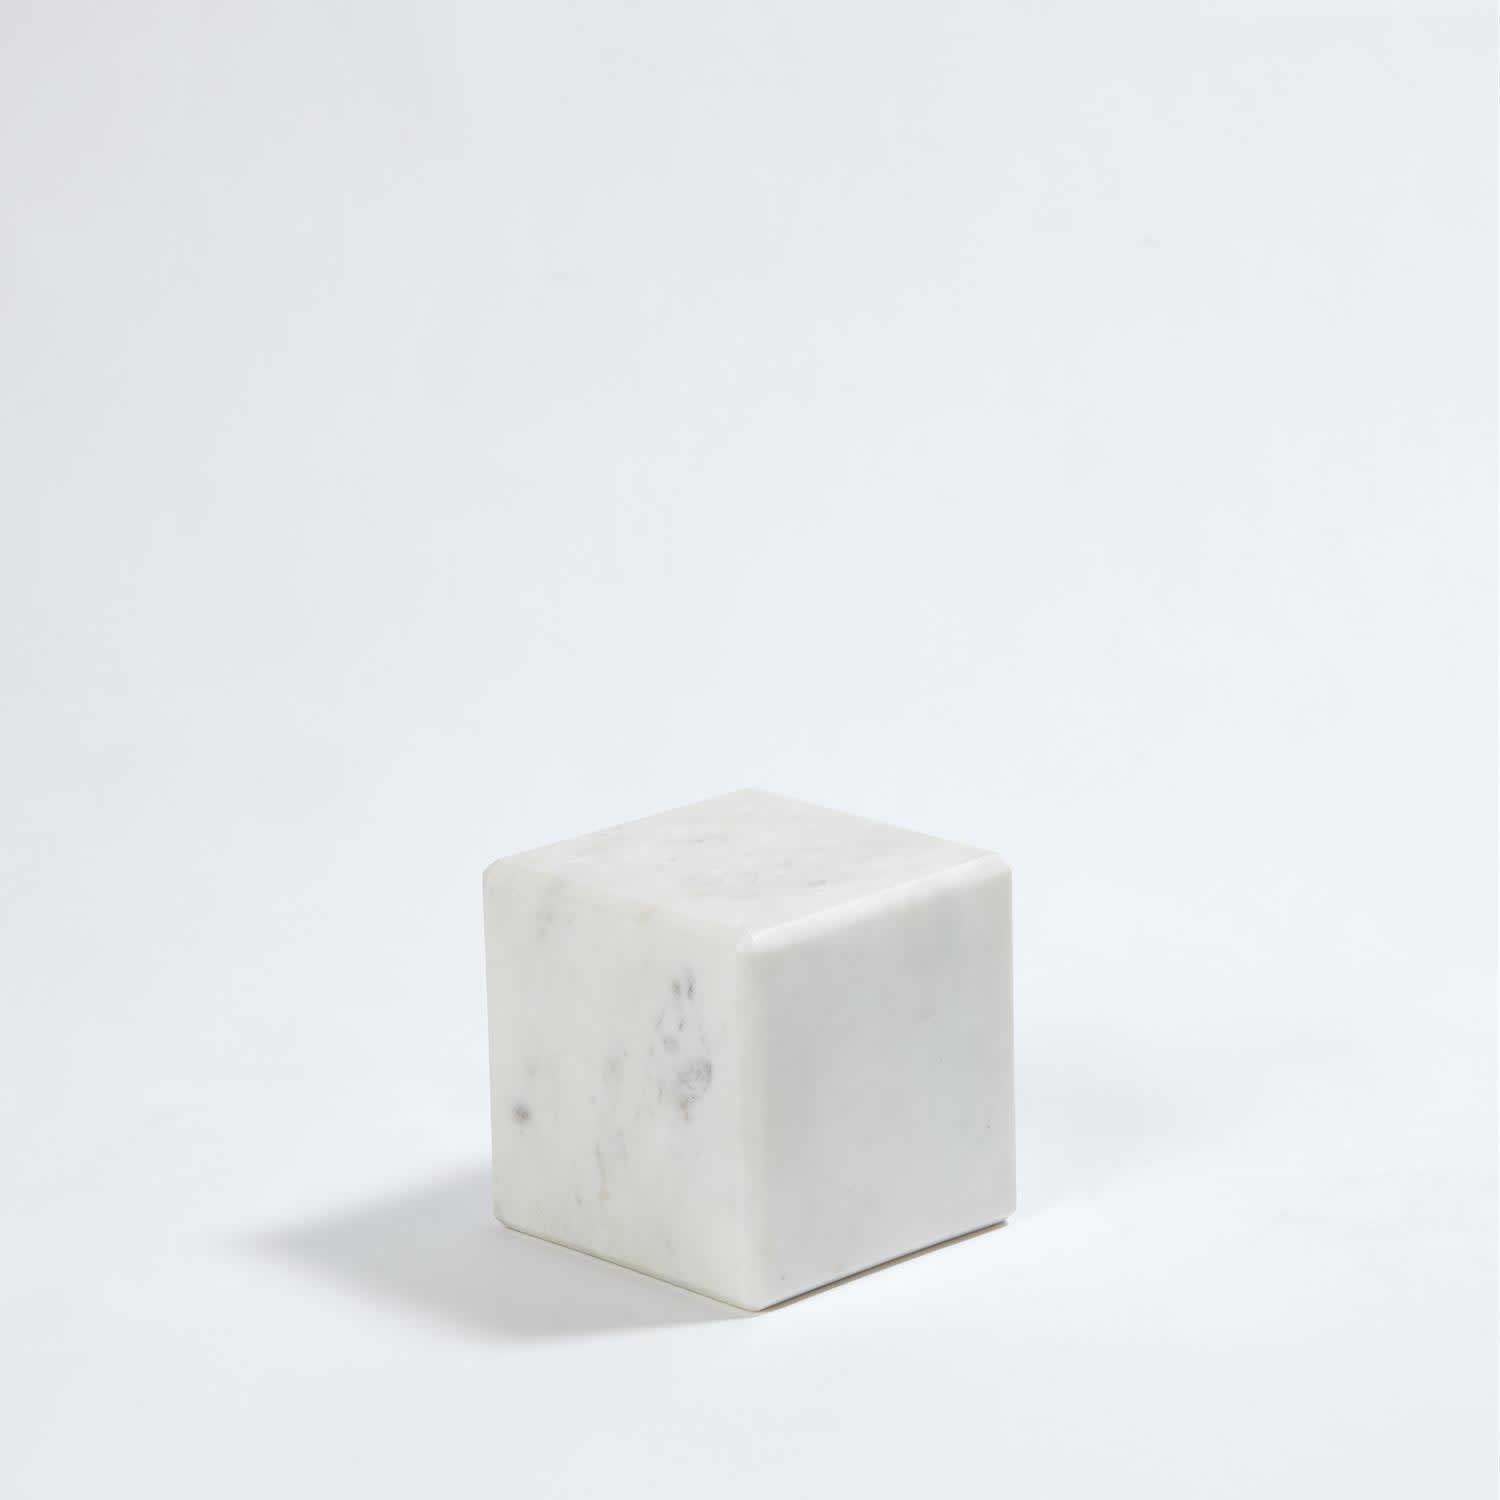 Marble Mini Pedestal Riser Small 5 x 5 Inch